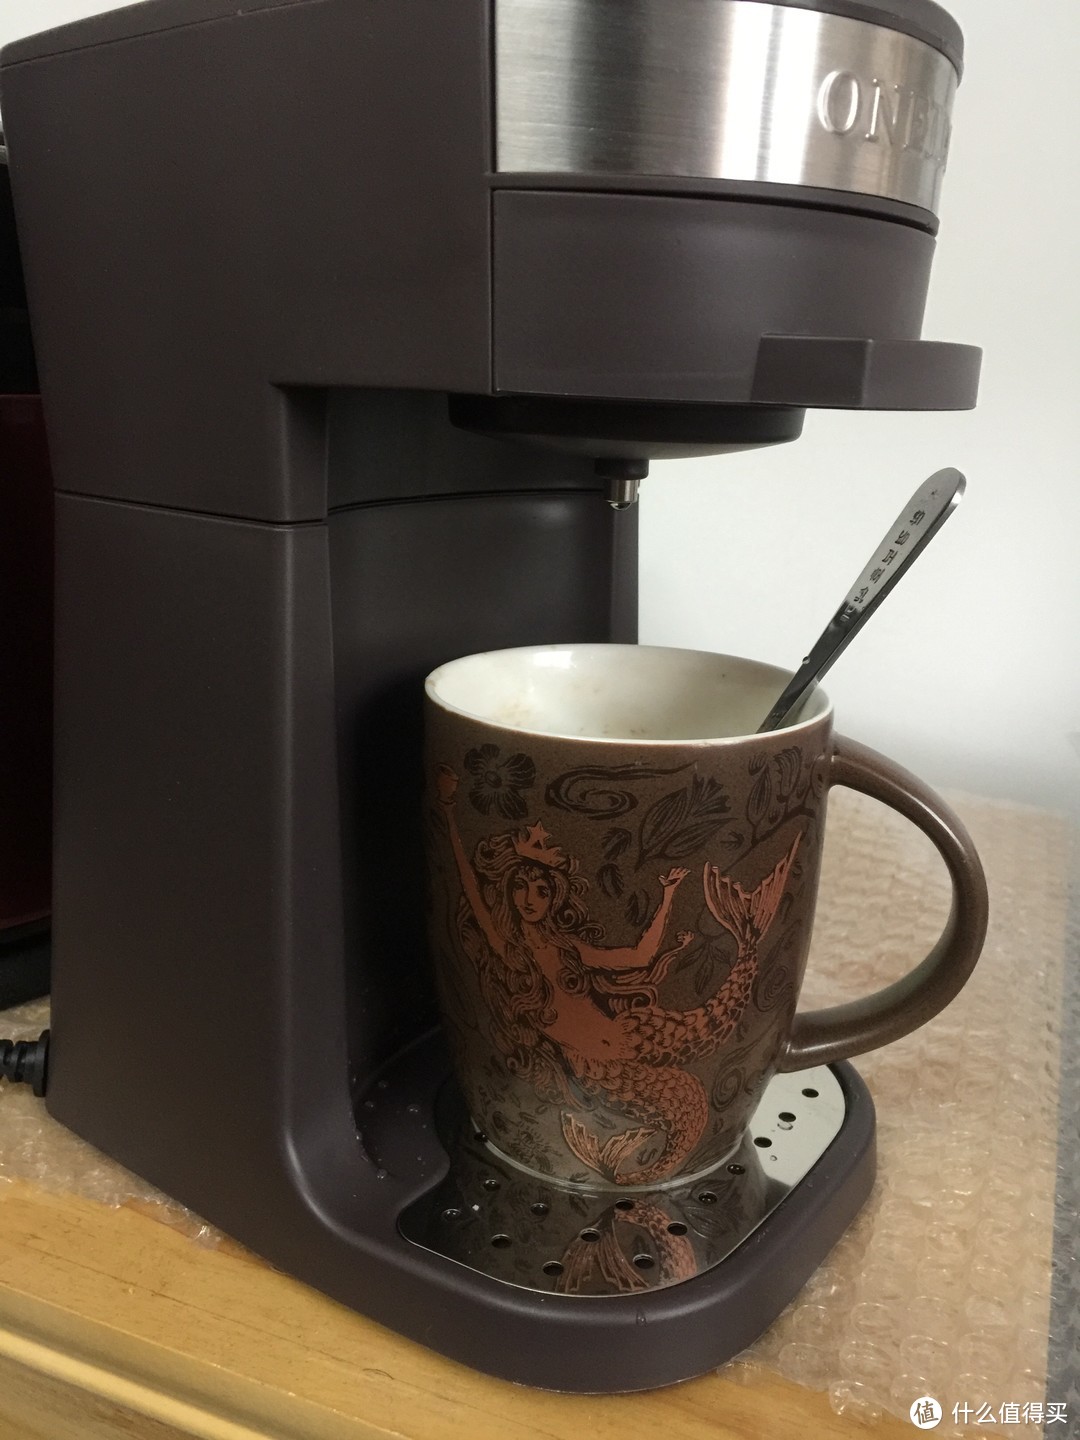 咖啡，黑色的丝滑。——ONEIDA奥奈达N1咖啡机测评